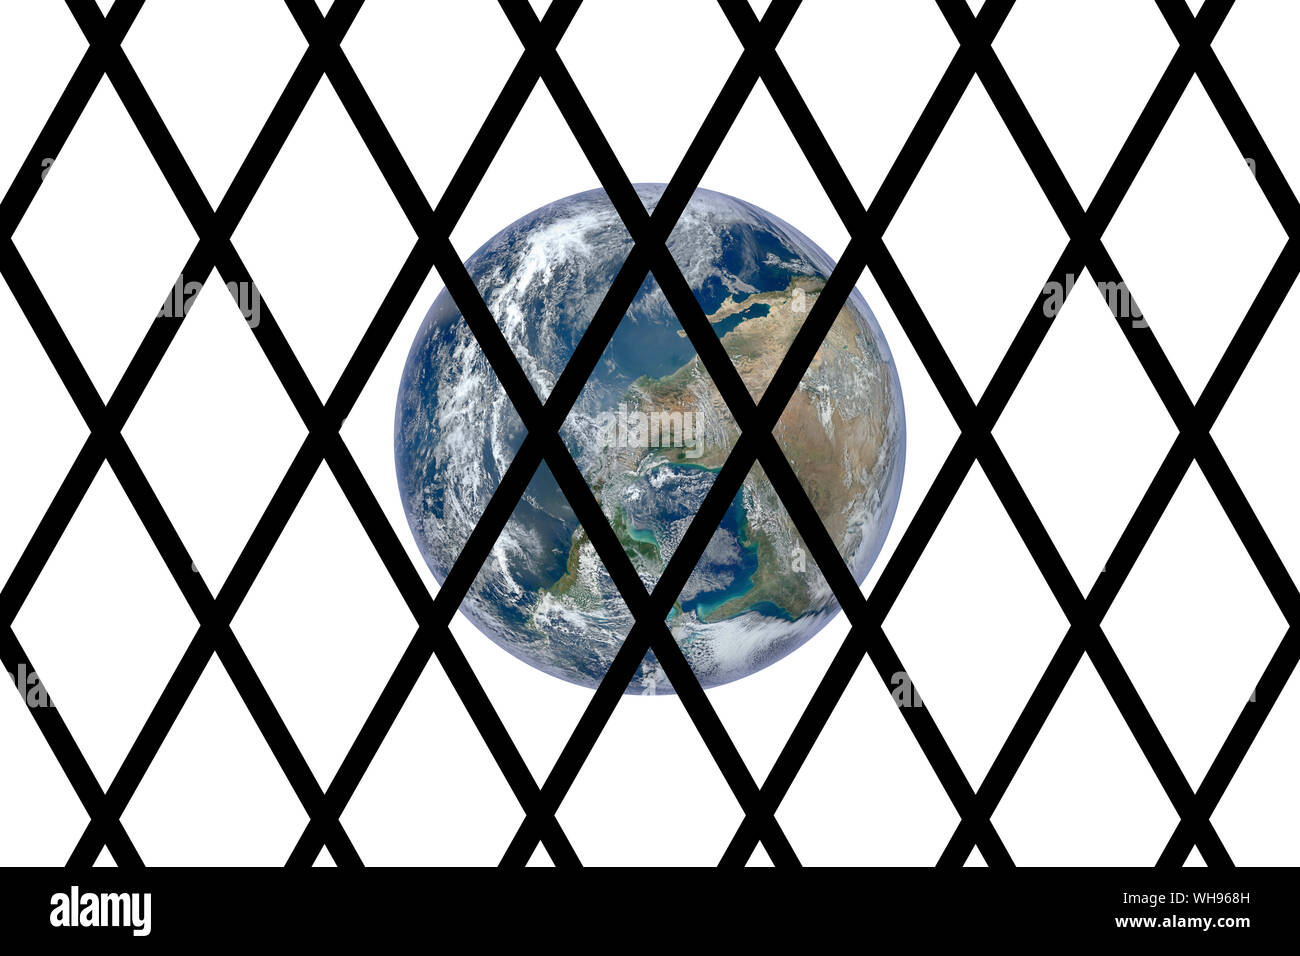 Konzeptionelle Bild der Welt durch ein Gefängnis bars gesehen - Konzept Bild Stockfoto